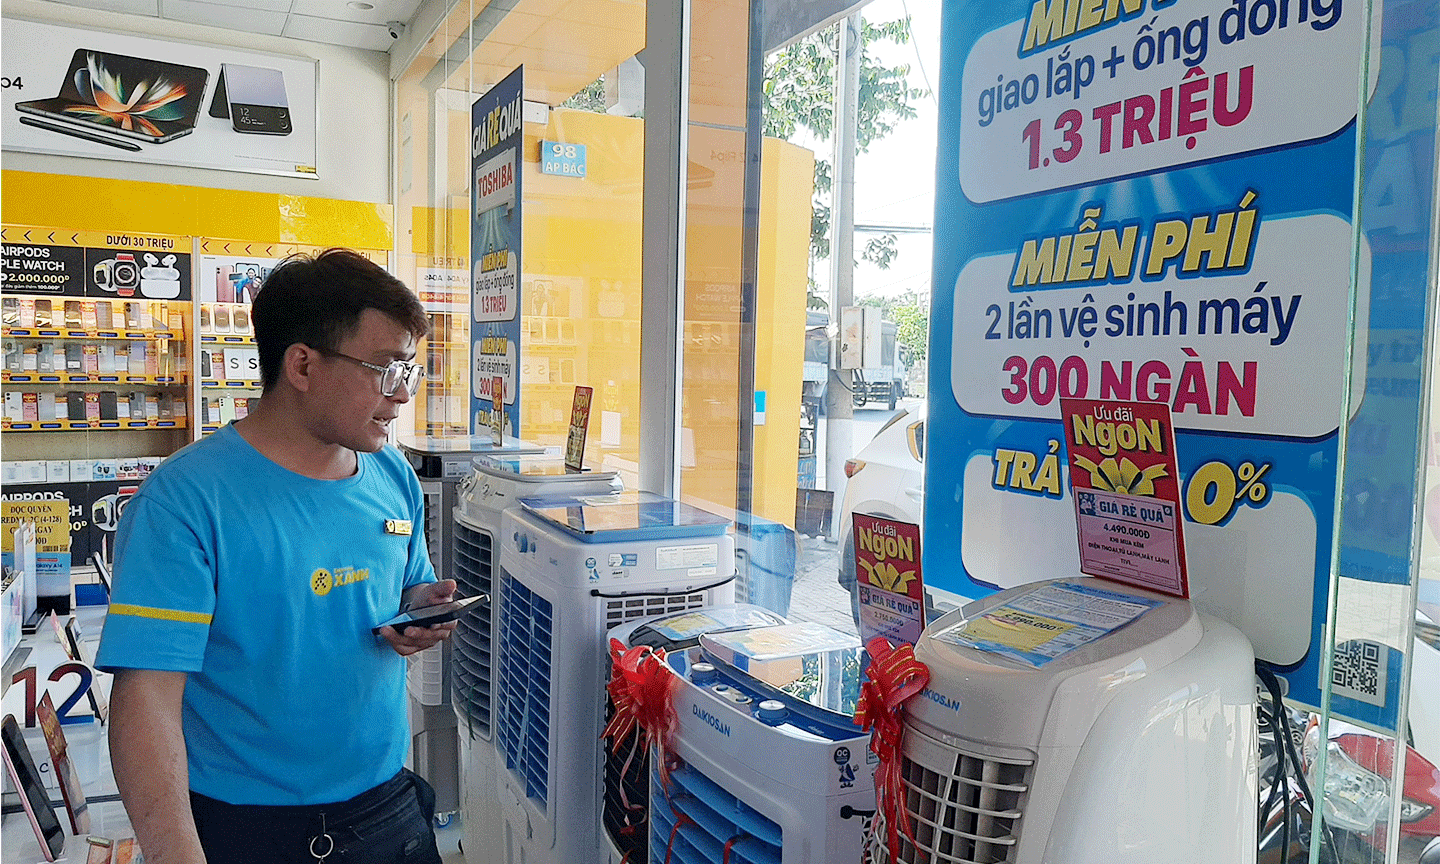 Nhân viên tại một cửa hàng điện máy đang tư vấn quạt hơi nước cho khách hàng